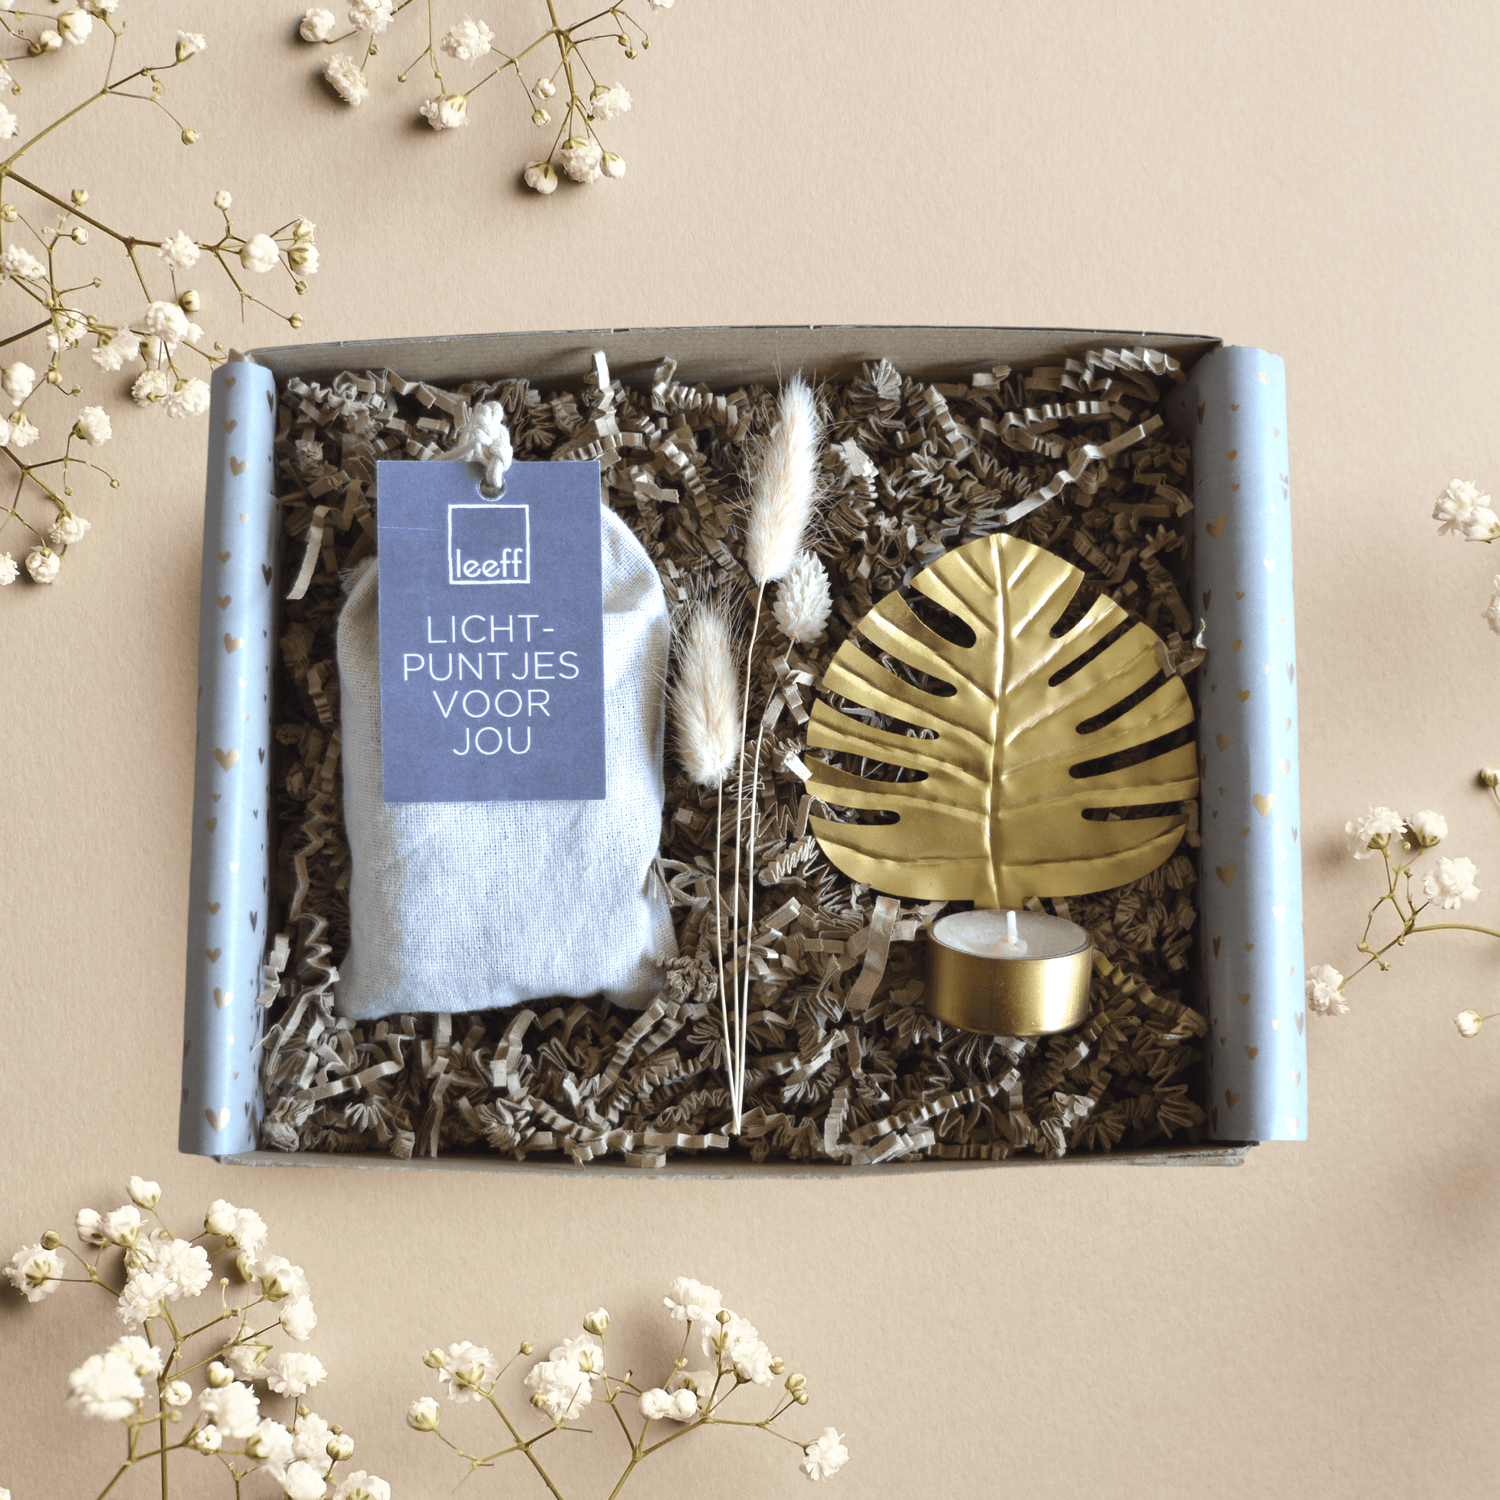 Opzoek naar een cadeau voor een house warming? geef dan deze mooie giftbox "A New Place"!. Deze giftbox is gevuld met lichtpuntjes (10 stuks waxinelichtjes) en een hele mooie wand Waxinelichthouder van het merk Mrs Bloom.   De Waxinelichthouder is verkrijgbaar in meerdere varianten; Blad, Bloem, Koraal en Lotus, Zie de foto's en kies jouw favoriet.  Unieke cadeaus bij Gift A Licious, unbox the love, cherish the moment